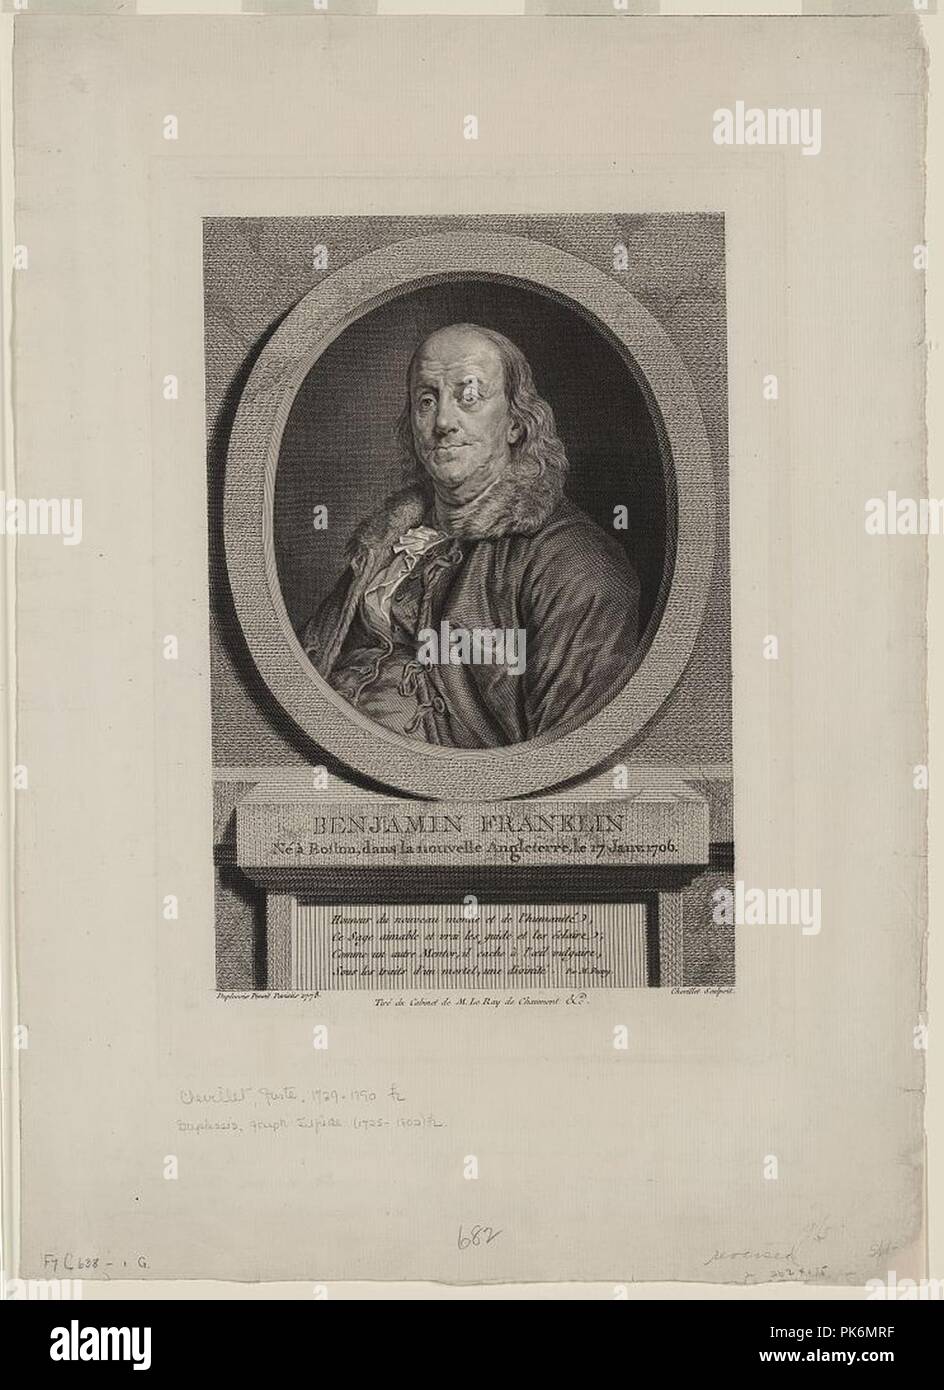 Benjamin Franklin - né à Boston, dans la nouvelle Angleterre, le 17 janv. 1706 - Duplessis pinxit, Parisiis 1778 ; Chevillet sculpsit. Foto Stock